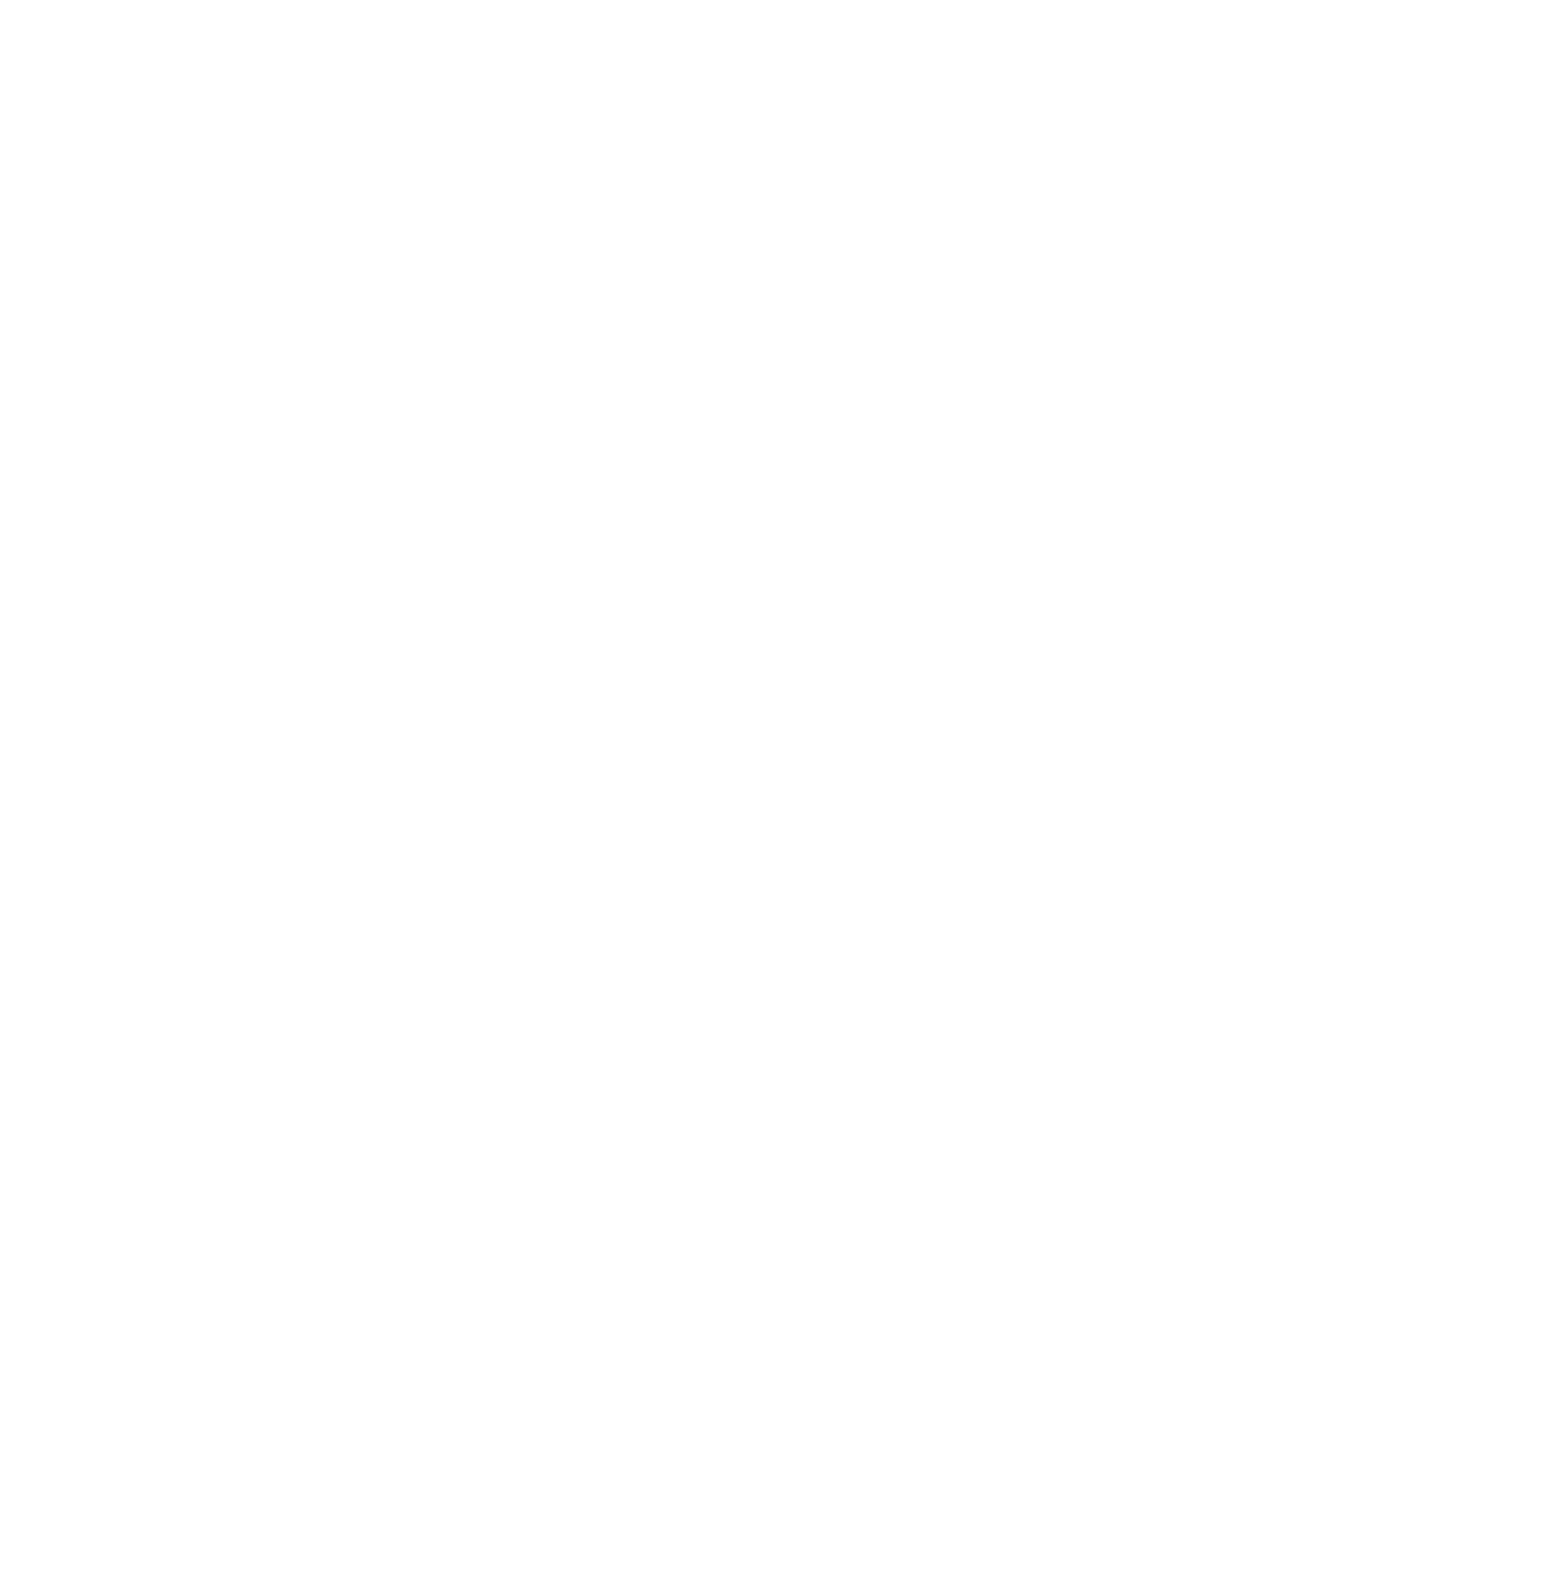 Meridian Energy logo pour fonds sombres (PNG transparent)